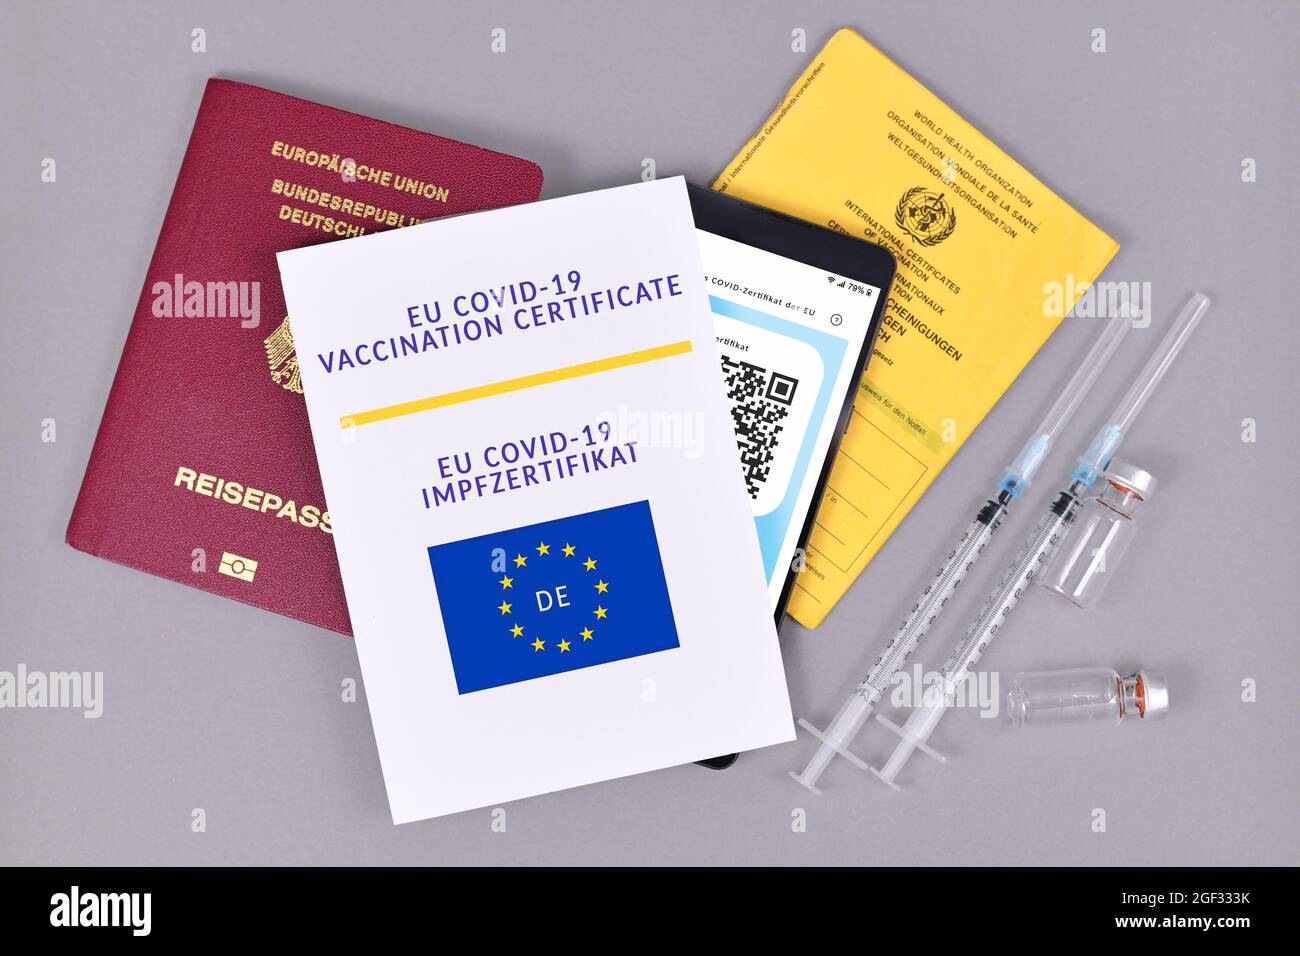 Germania - Luglio 2021: Certificato di vaccinazione EU COVID-19 su carta e digitale per telefono, passaporto vaccino, carta di identità di viaggio e siringhe con flaconcini in grigio b Foto Stock